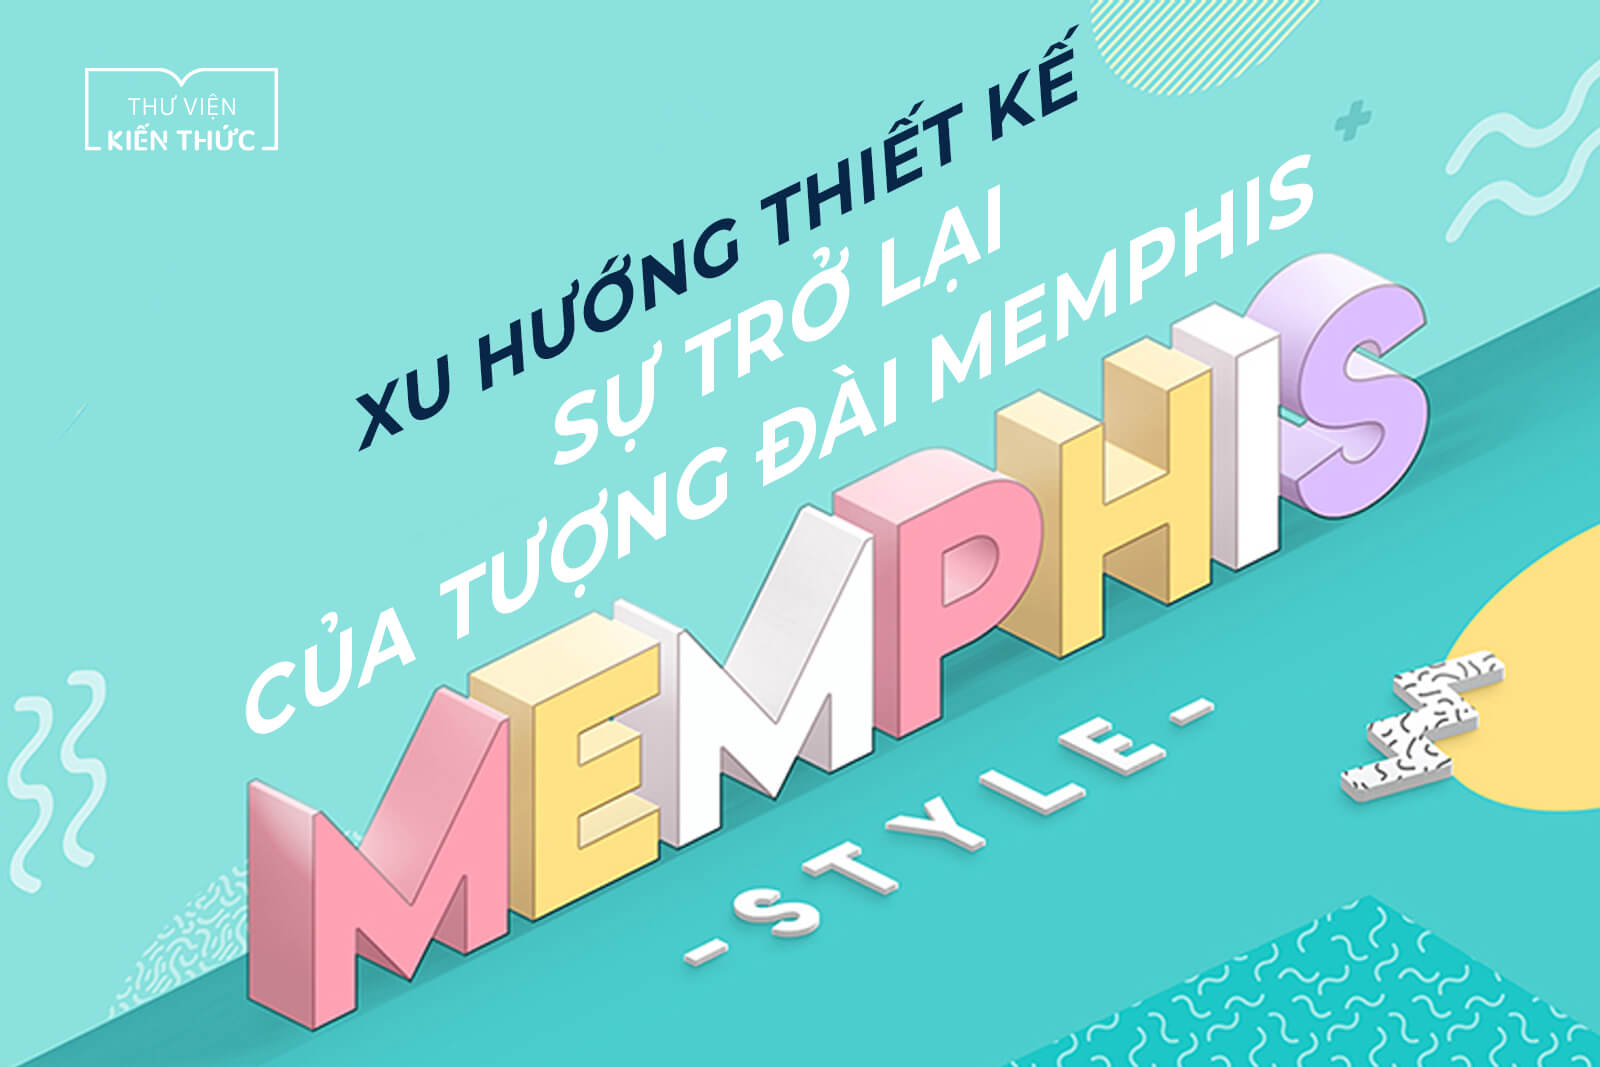 Xu hướng thiết kế: Sự trở lại của tượng đài Memphis